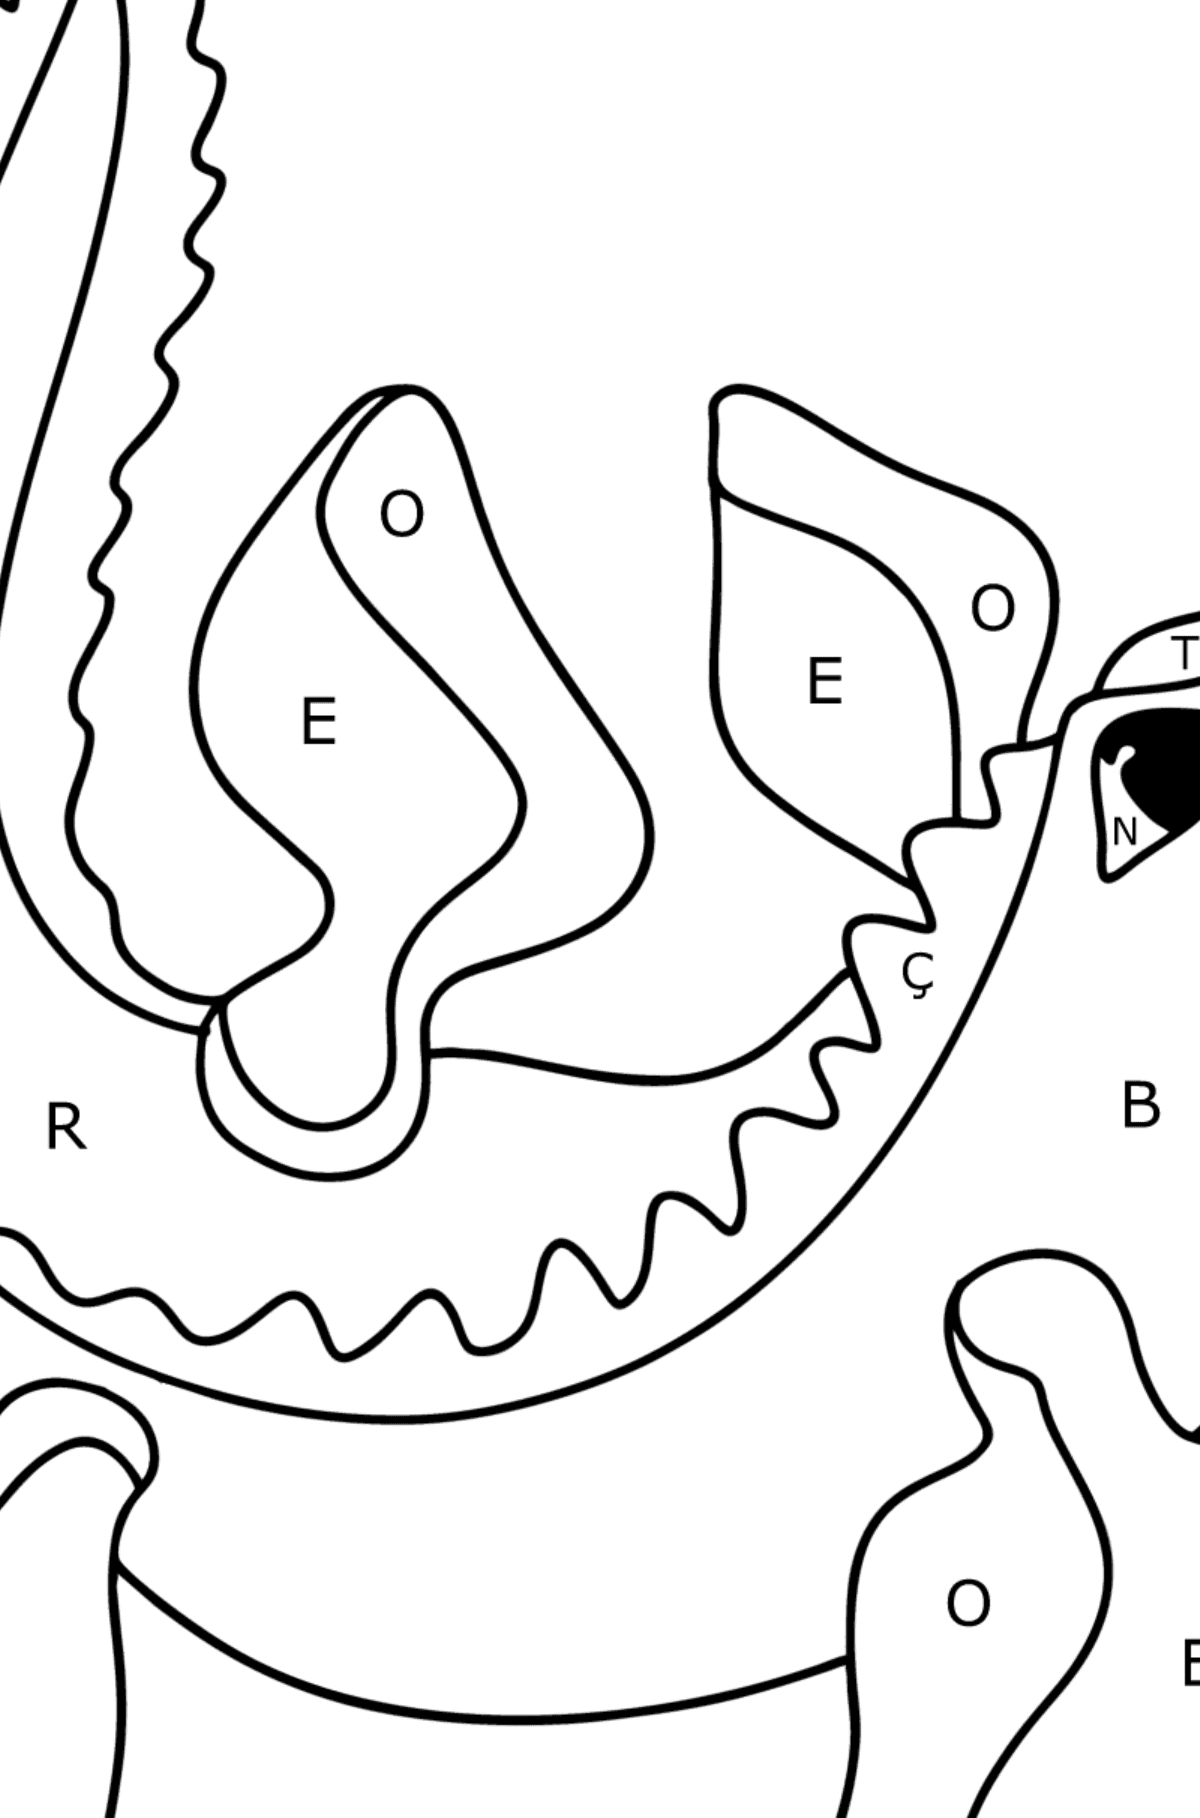 Boyama sayfası mosasaurus - Harflerle Boyama çocuklar için